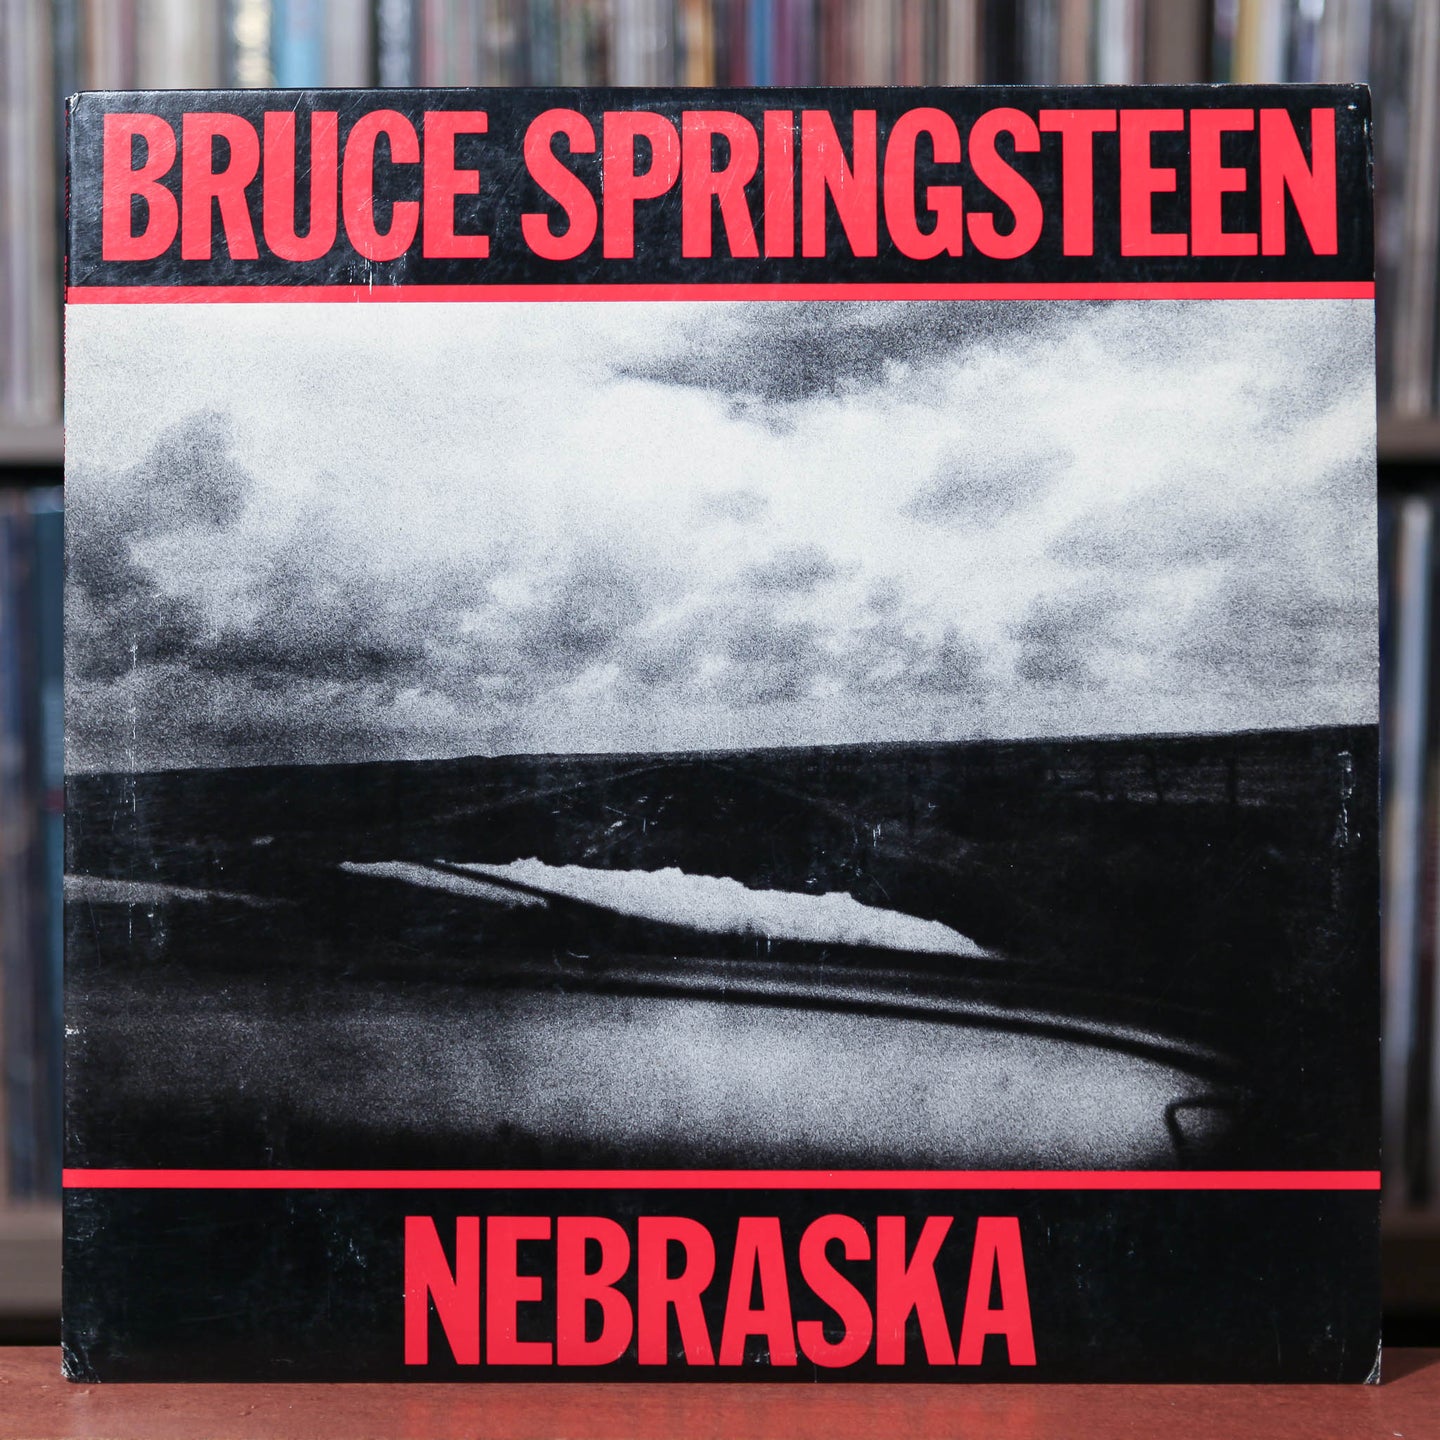 Bruce Springsteen - Nebraska  - 1982 CBS, VG+/EX